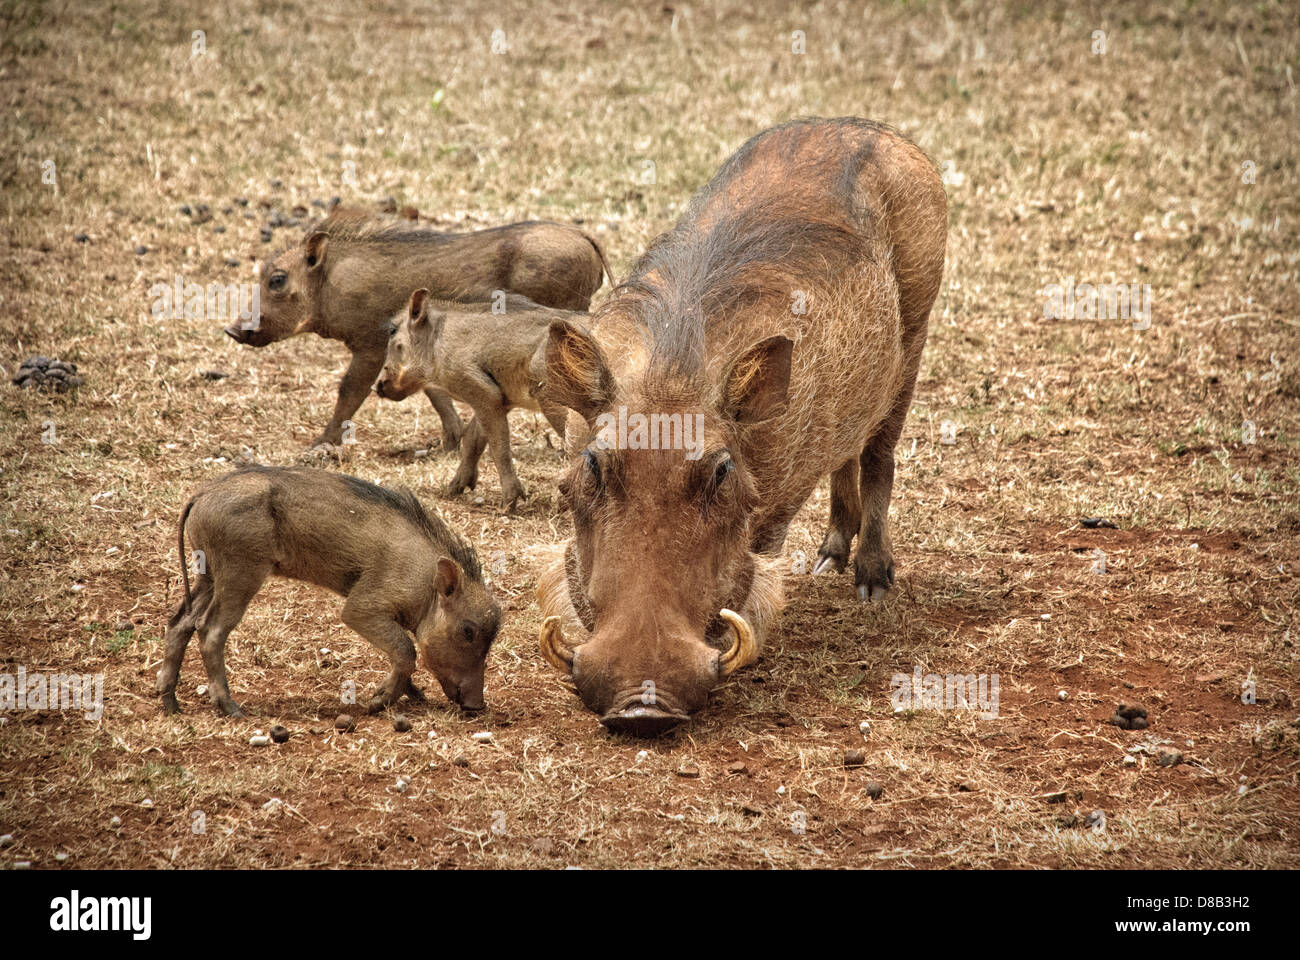 Adult Female Warthog with her three little Piglets, Phacochoerus africanus, Giraffe Manor, Nairobi, Kenya, Africa Stock Photo